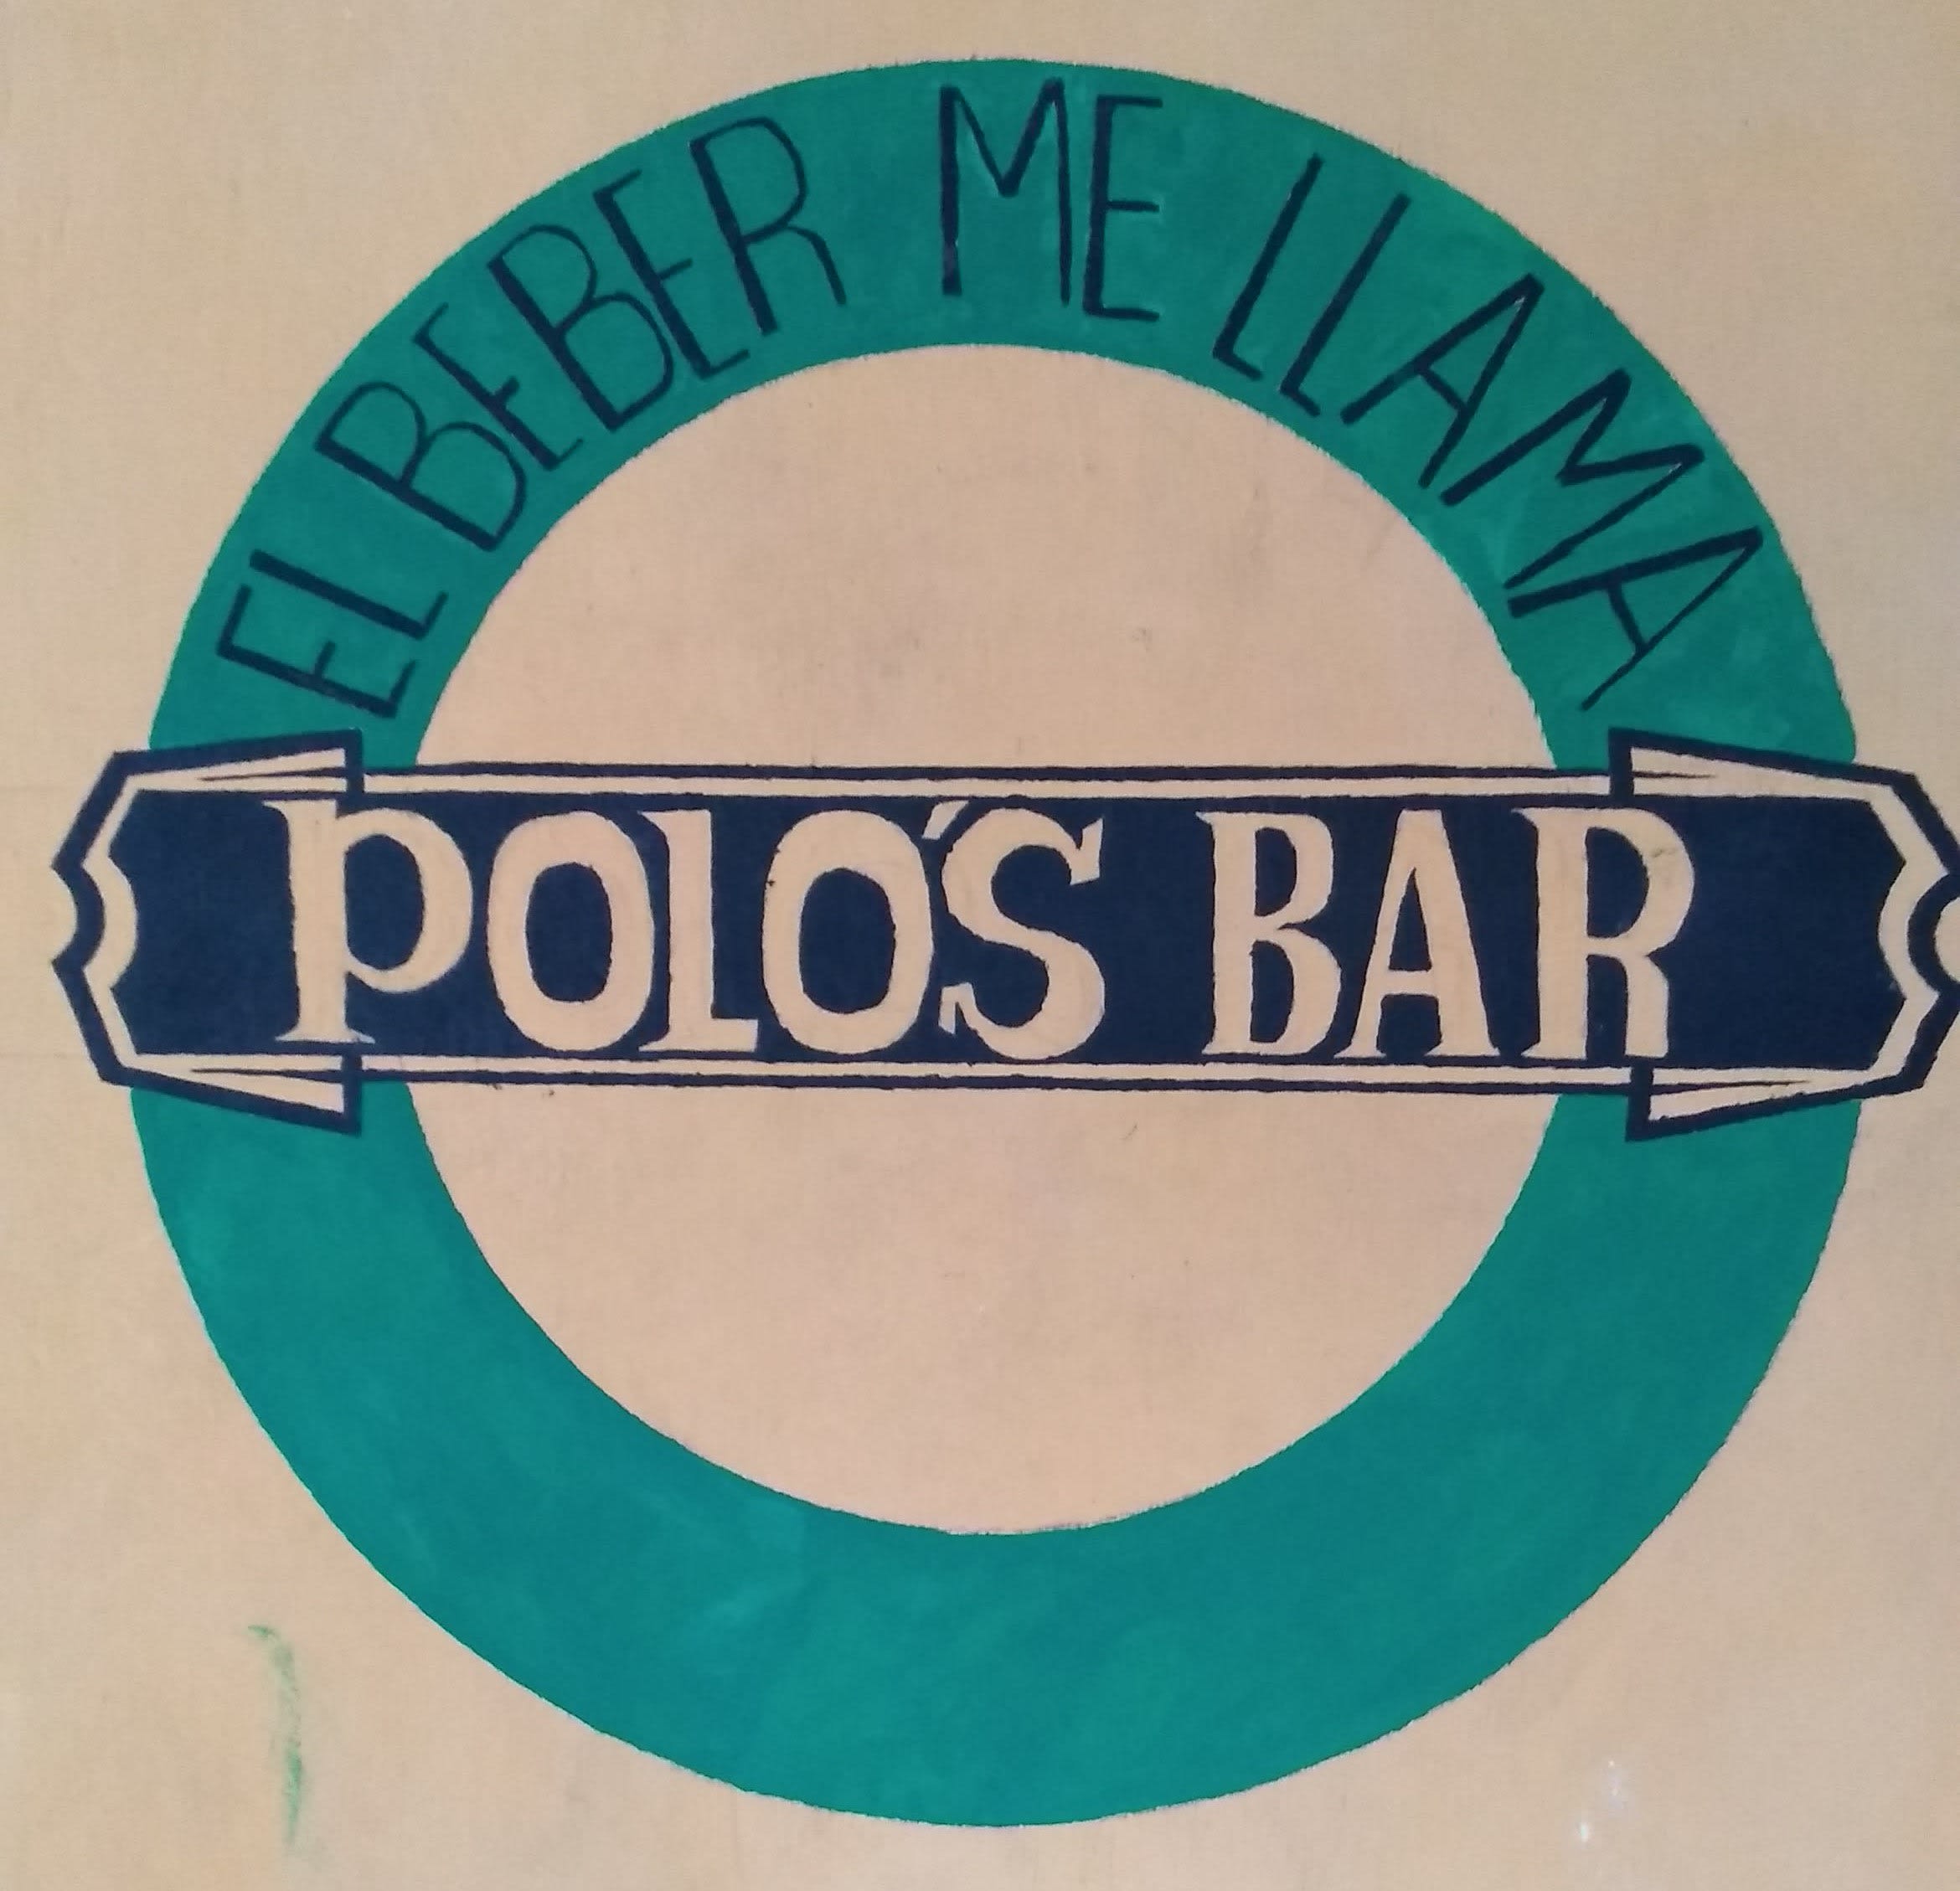 Polo's Bar